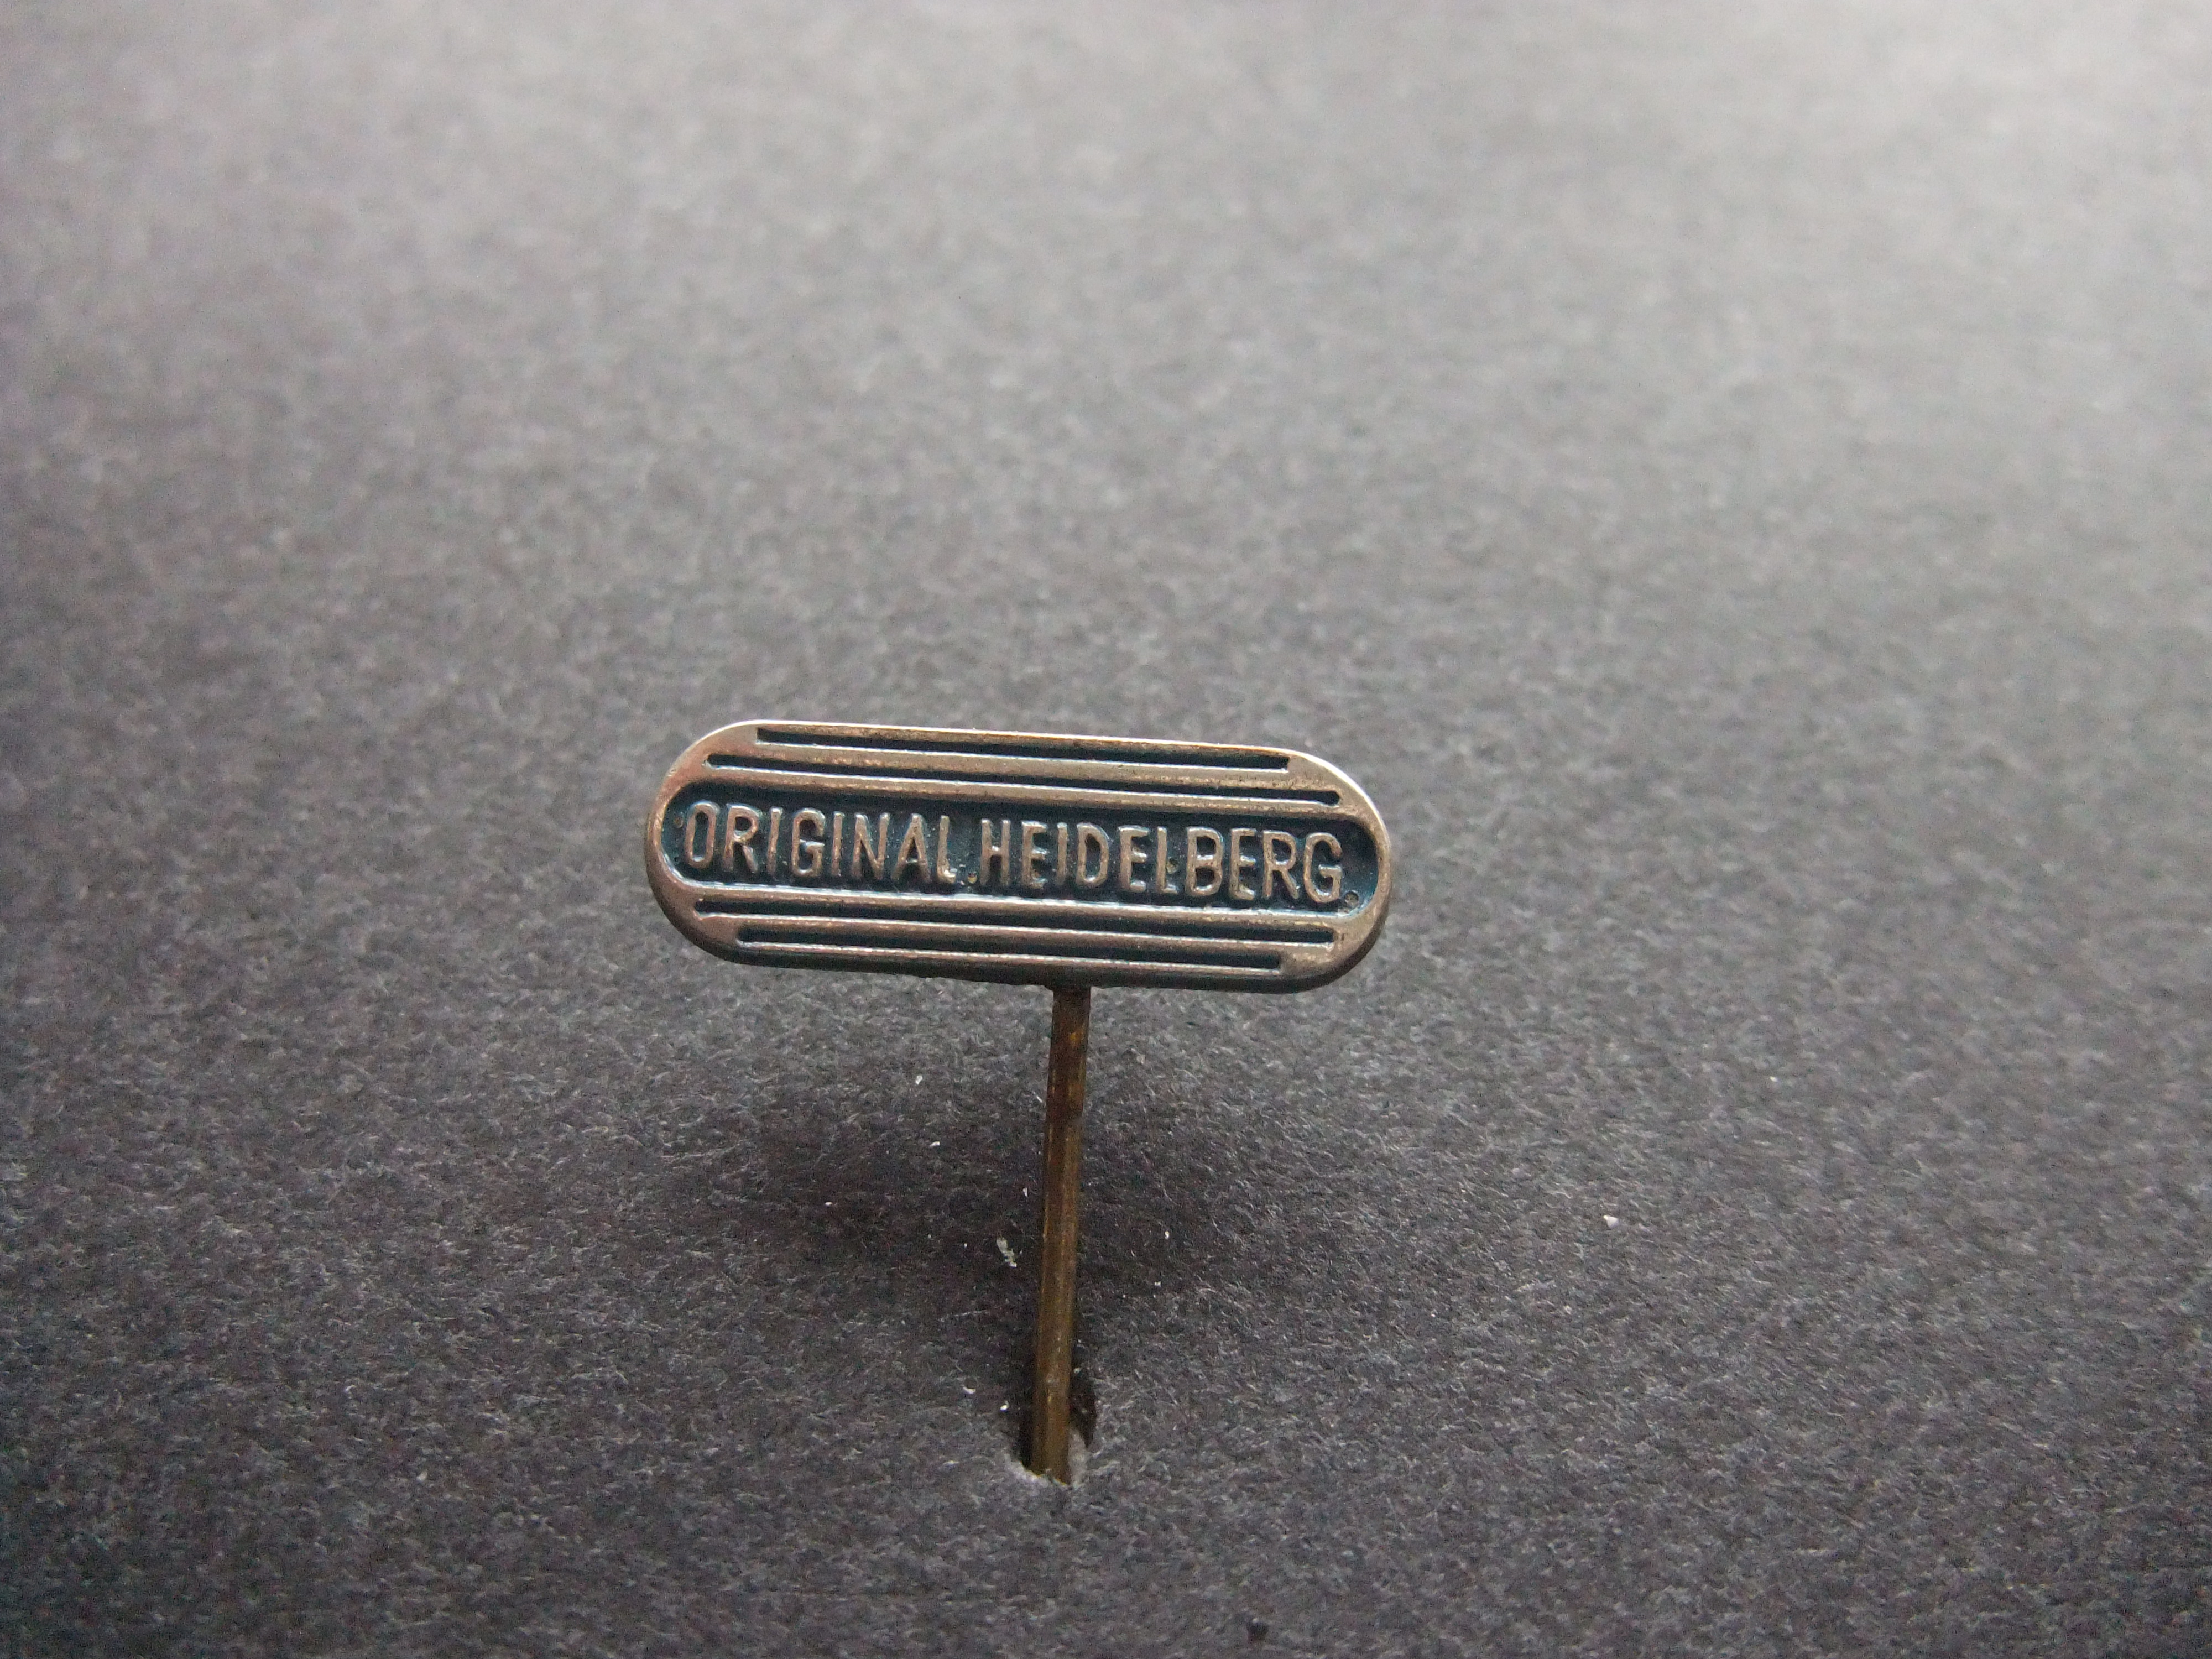 Original Heidelberg platenpers, hoogdrukpers Duitsland, logo